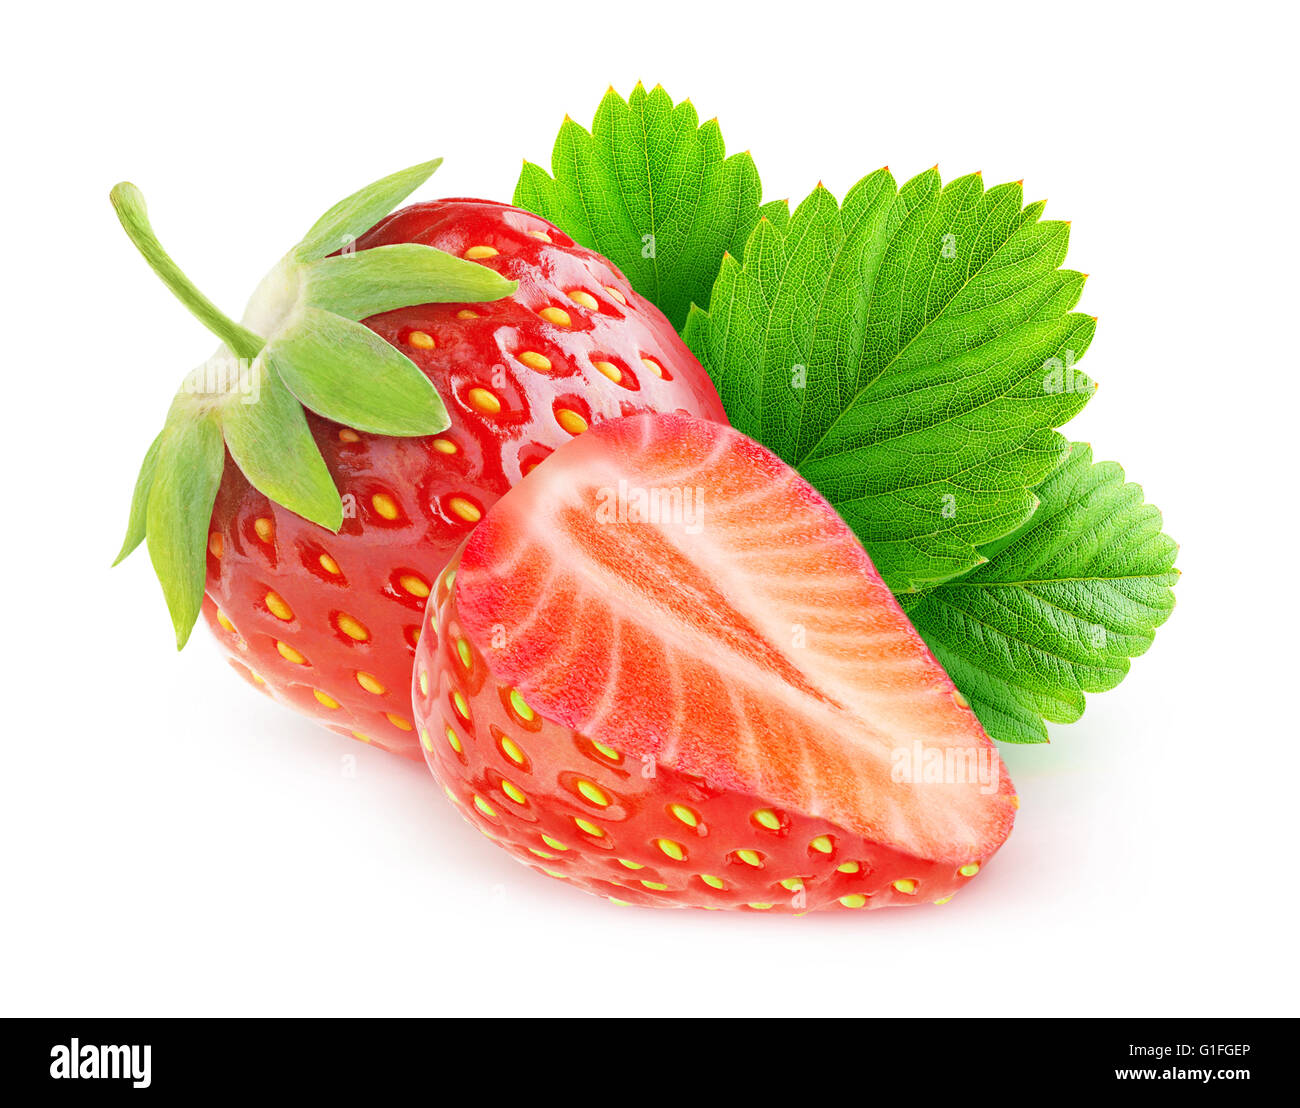 Fraises isolé. Couper les fraises isolé sur fond blanc avec clipping path Banque D'Images